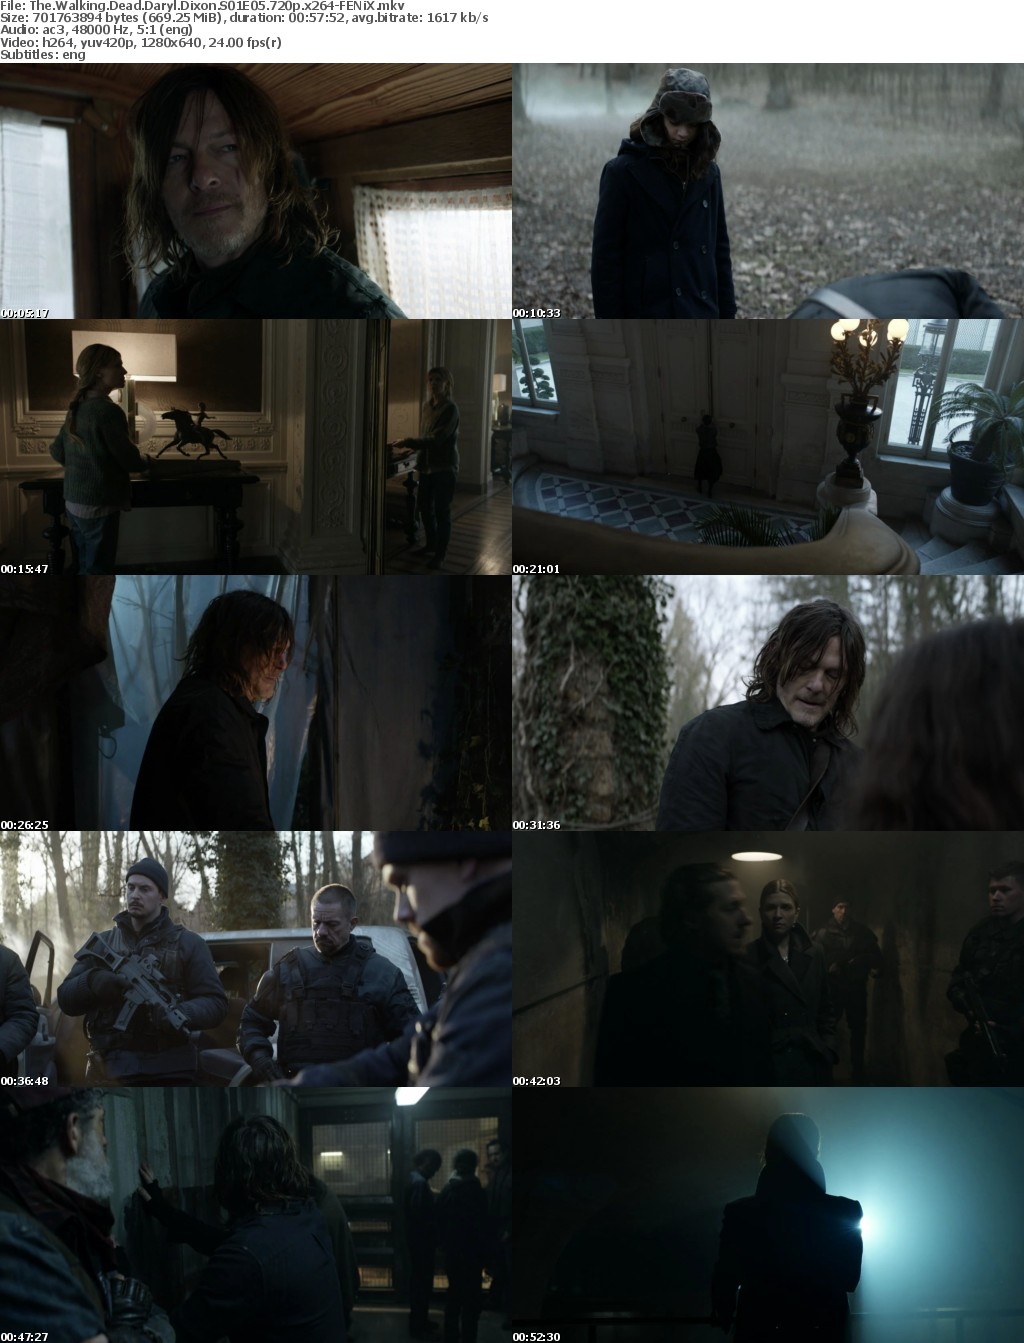 The Walking Dead Daryl Dixon S01 720p x264-FENiX